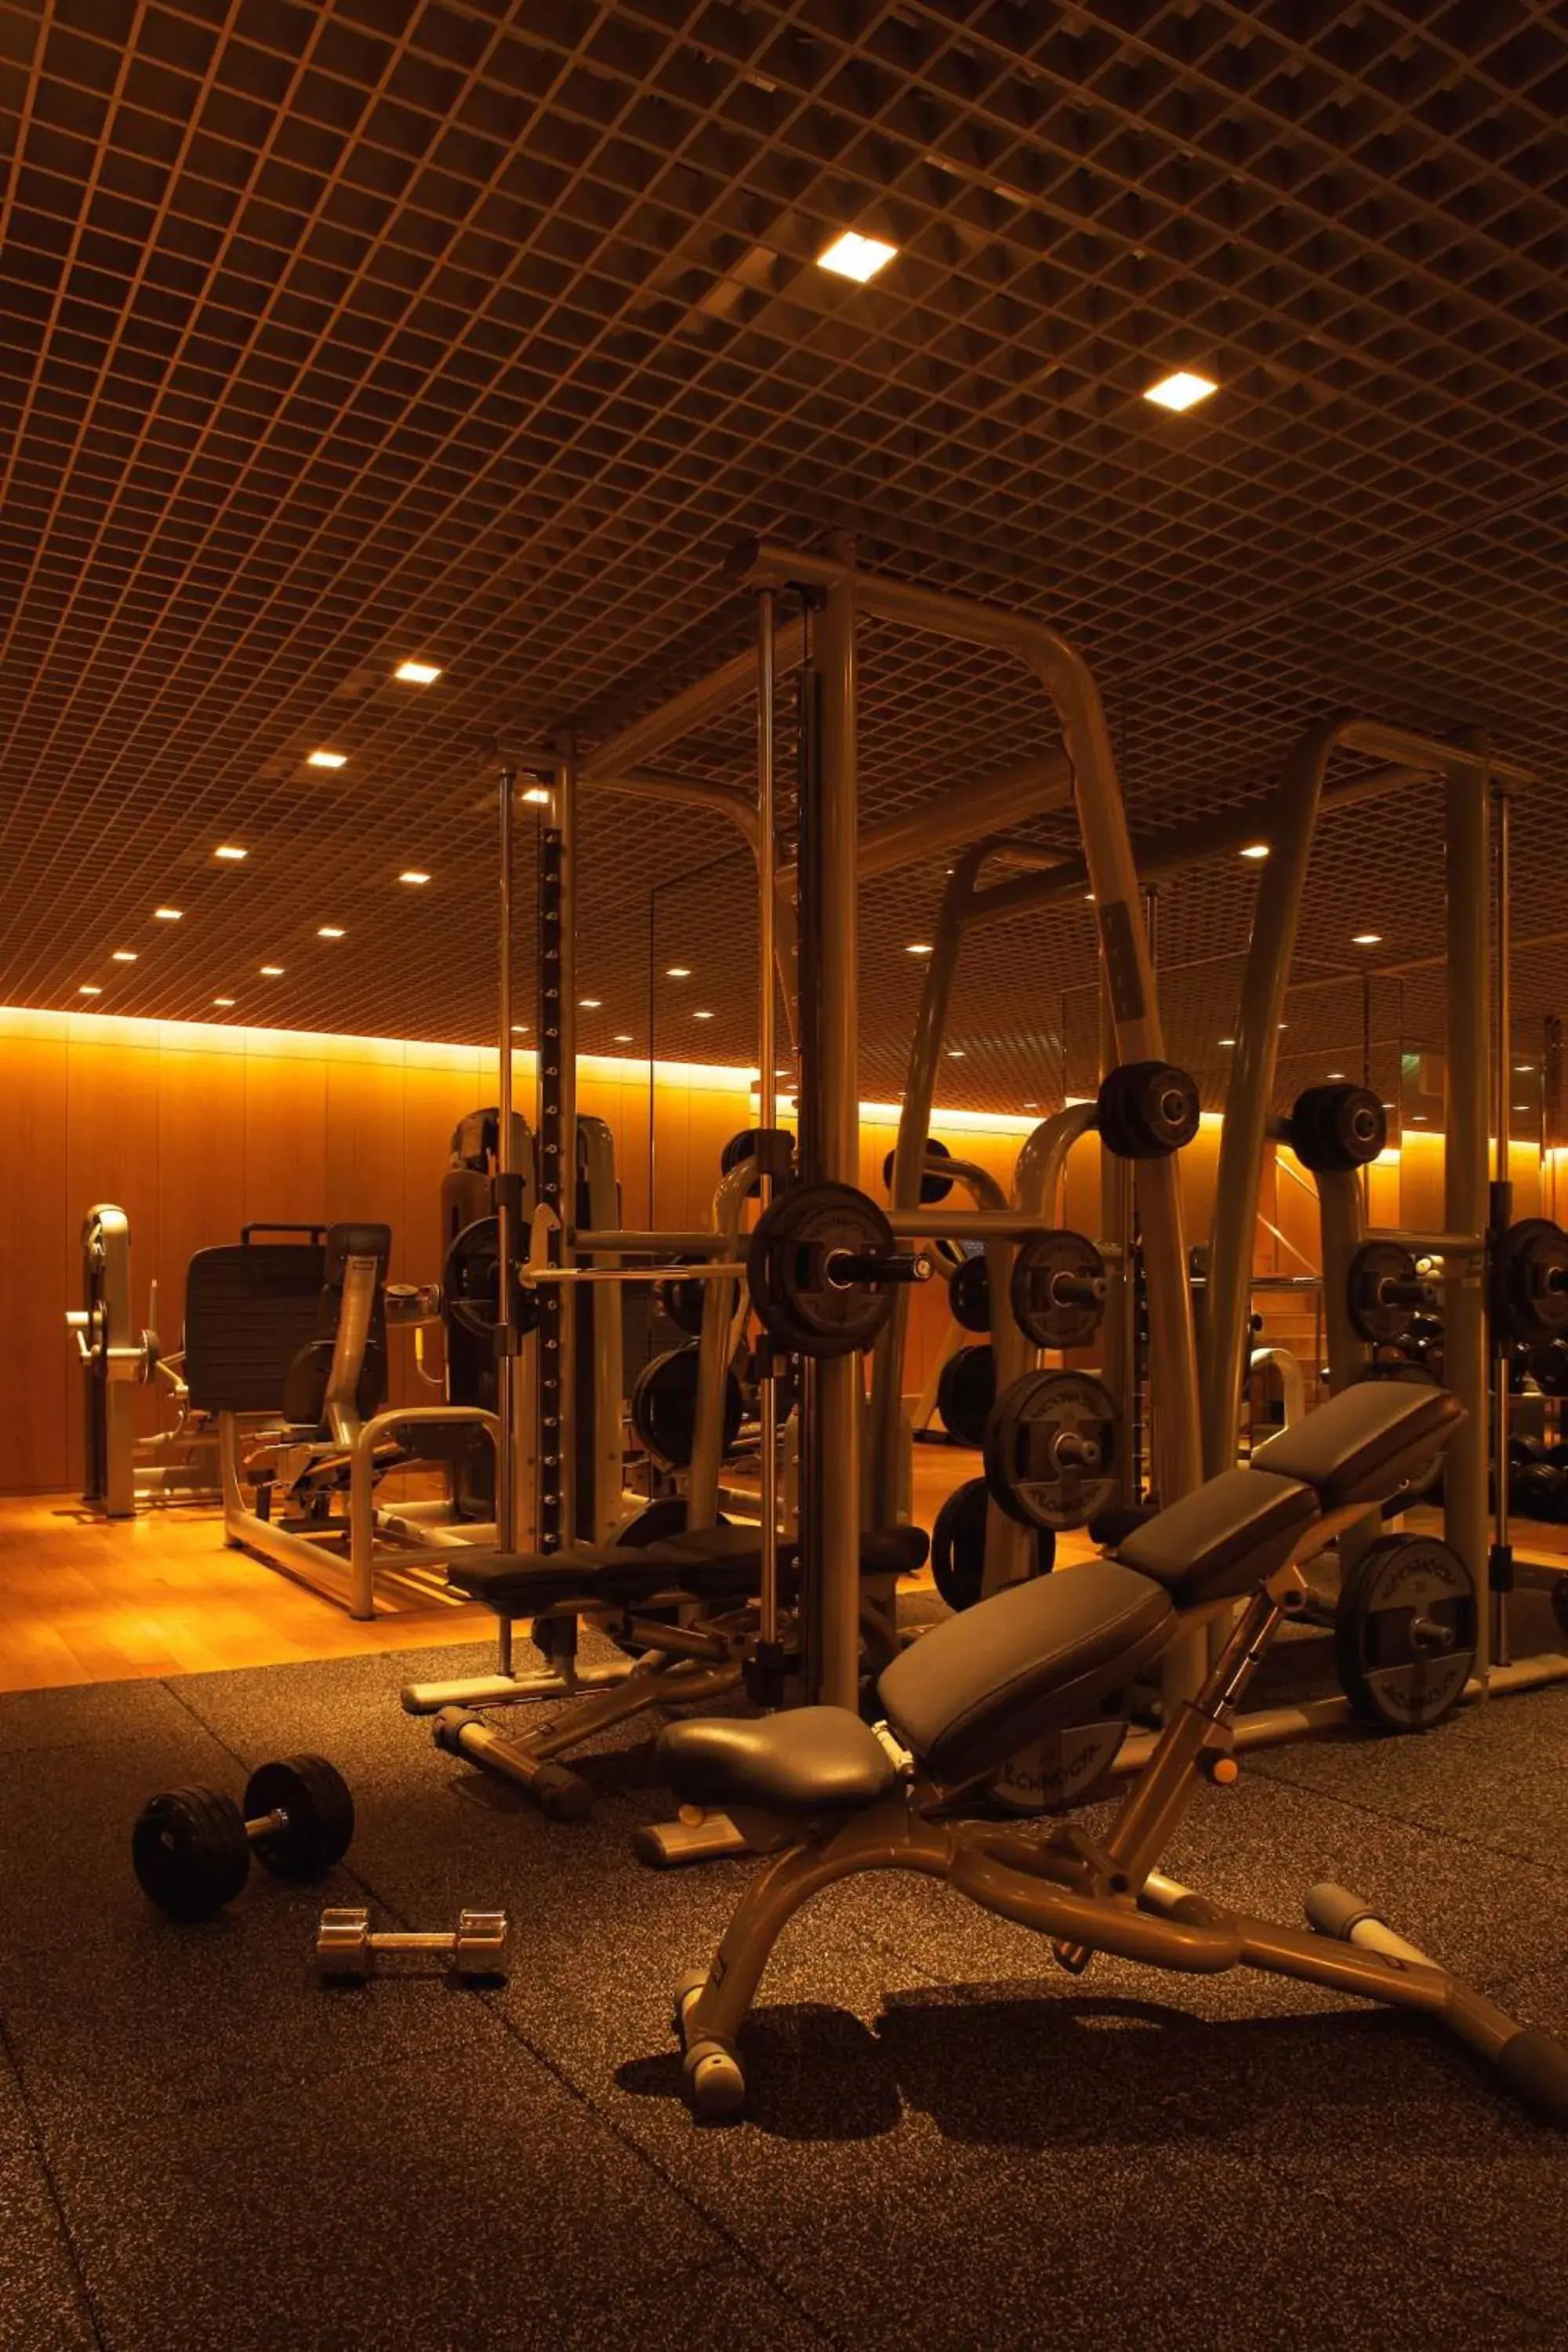 Fitness centre/facilities, Fitness Center/Facilities in Grand Hyatt Tokyo